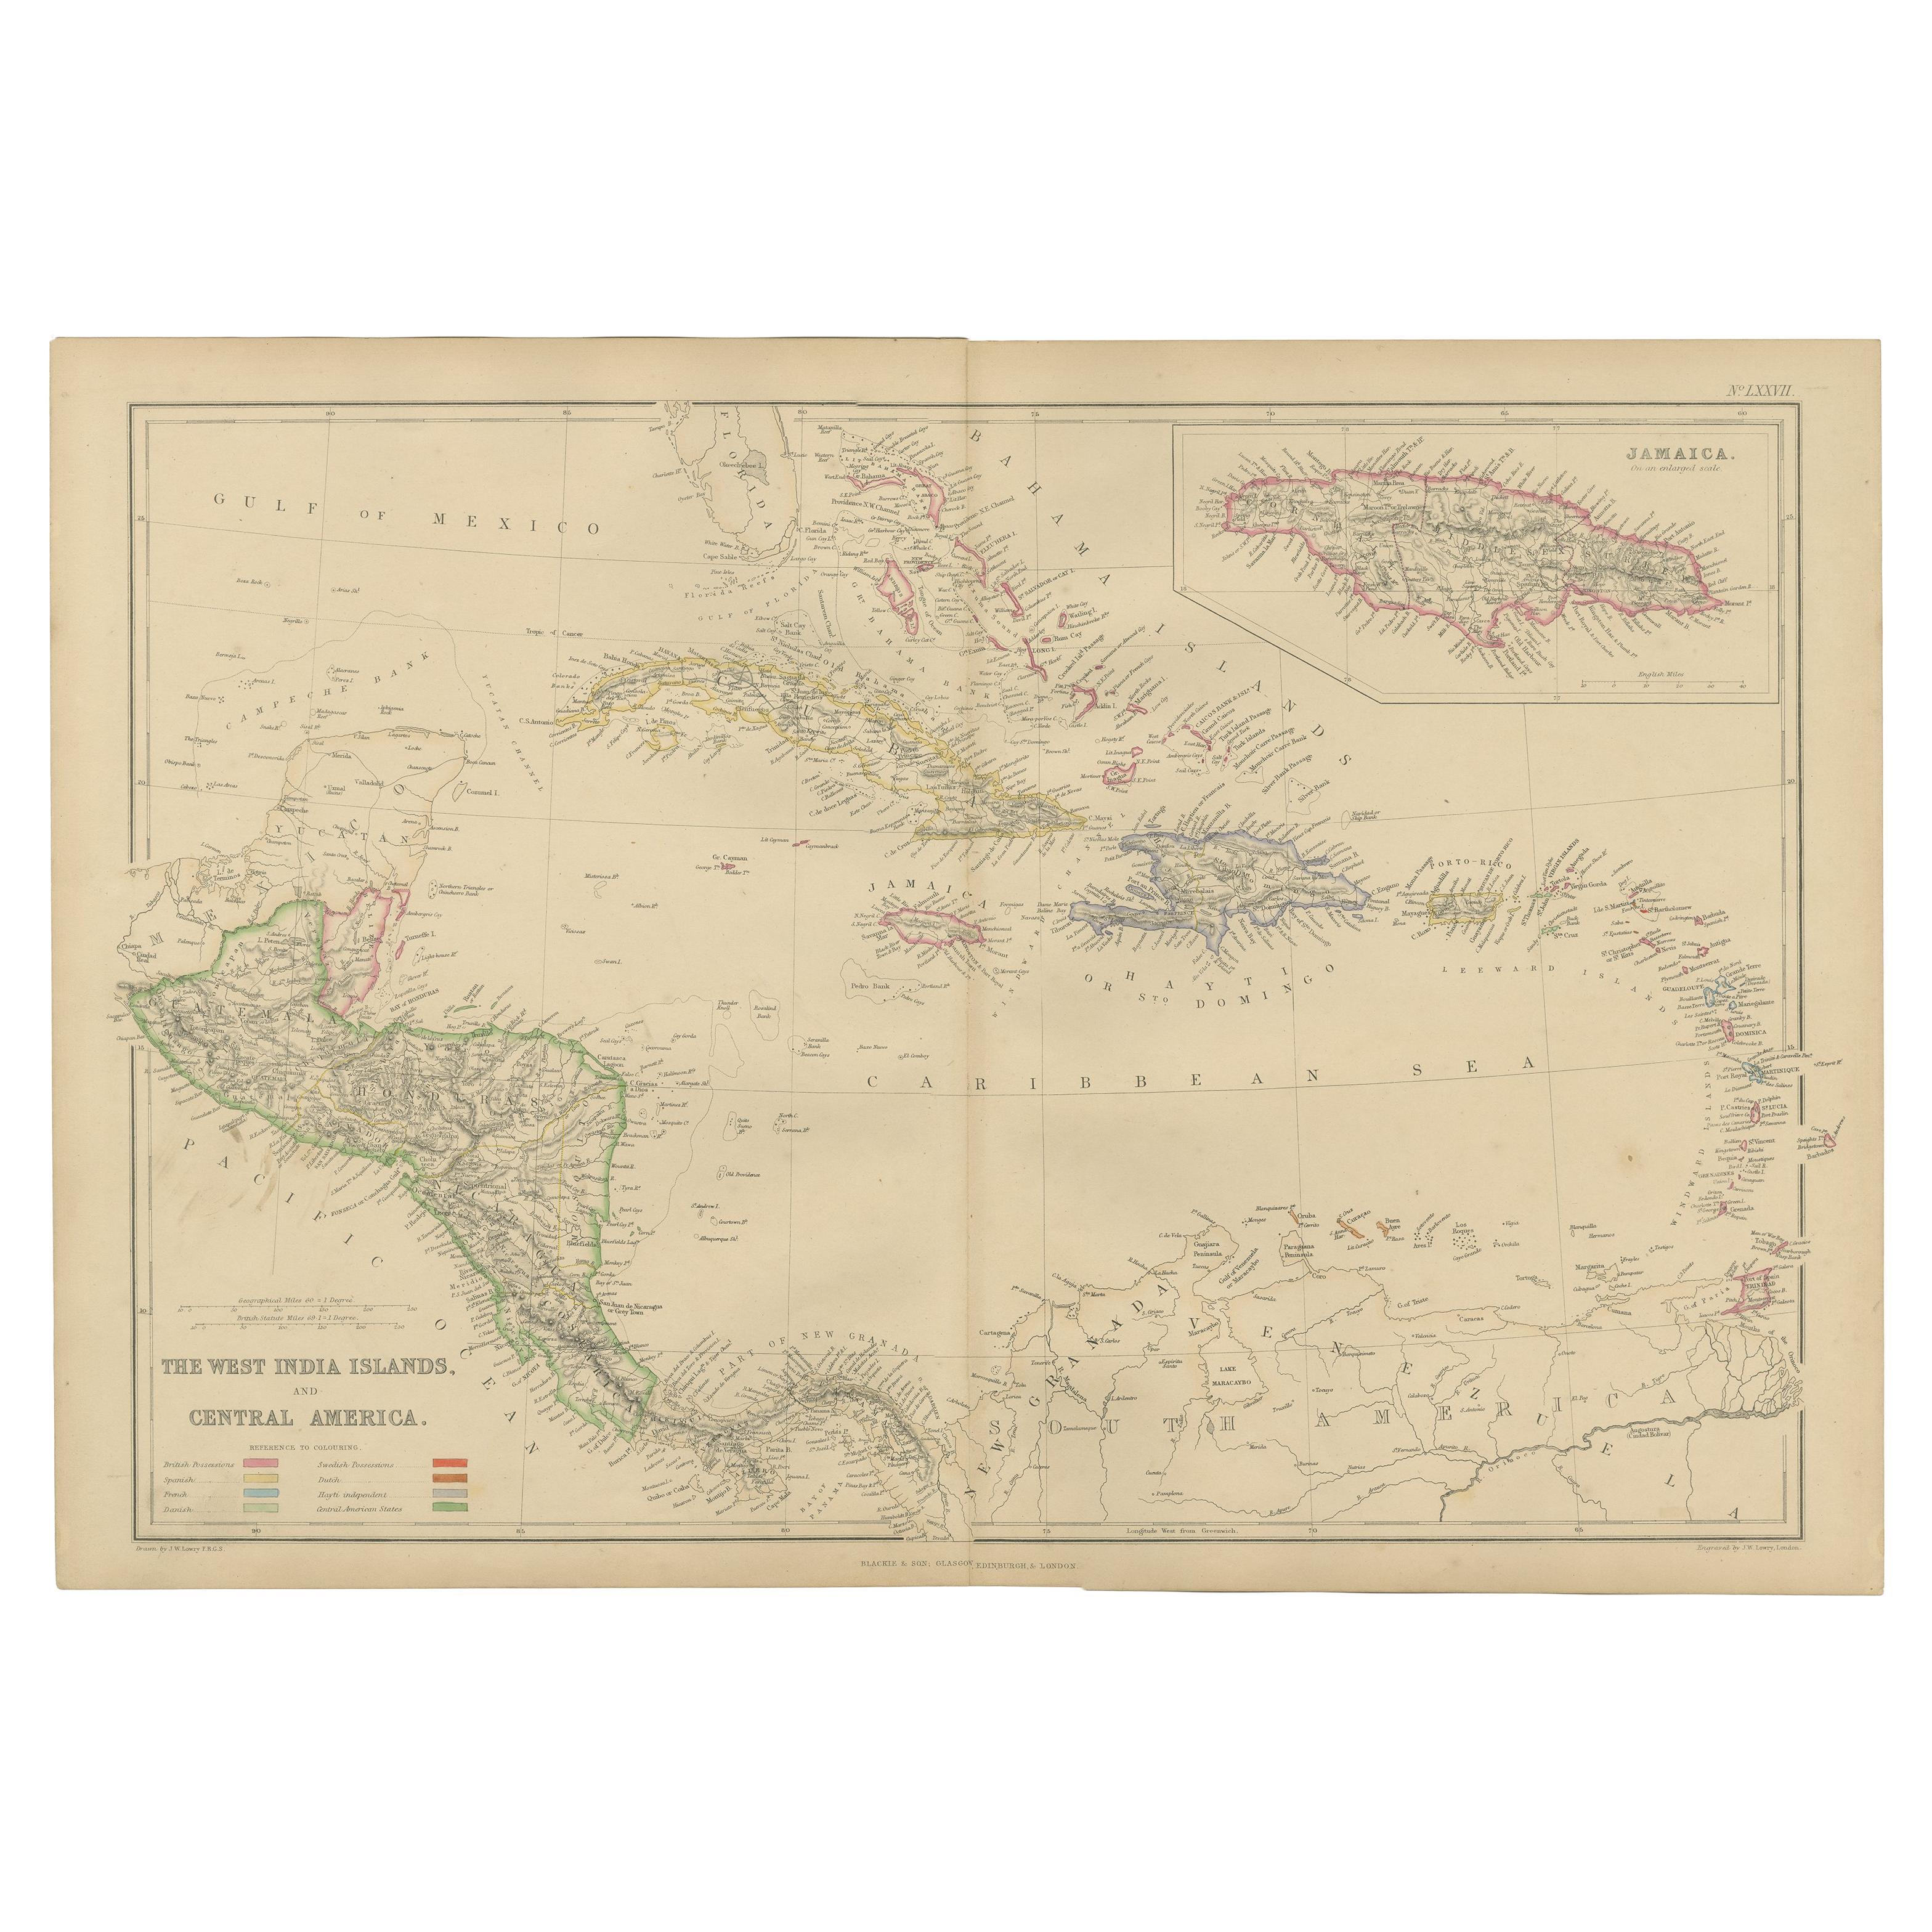 Carte ancienne des Antiquités des Indes occidentales et de l'Amérique centrale par W. G. Blackie, 1859